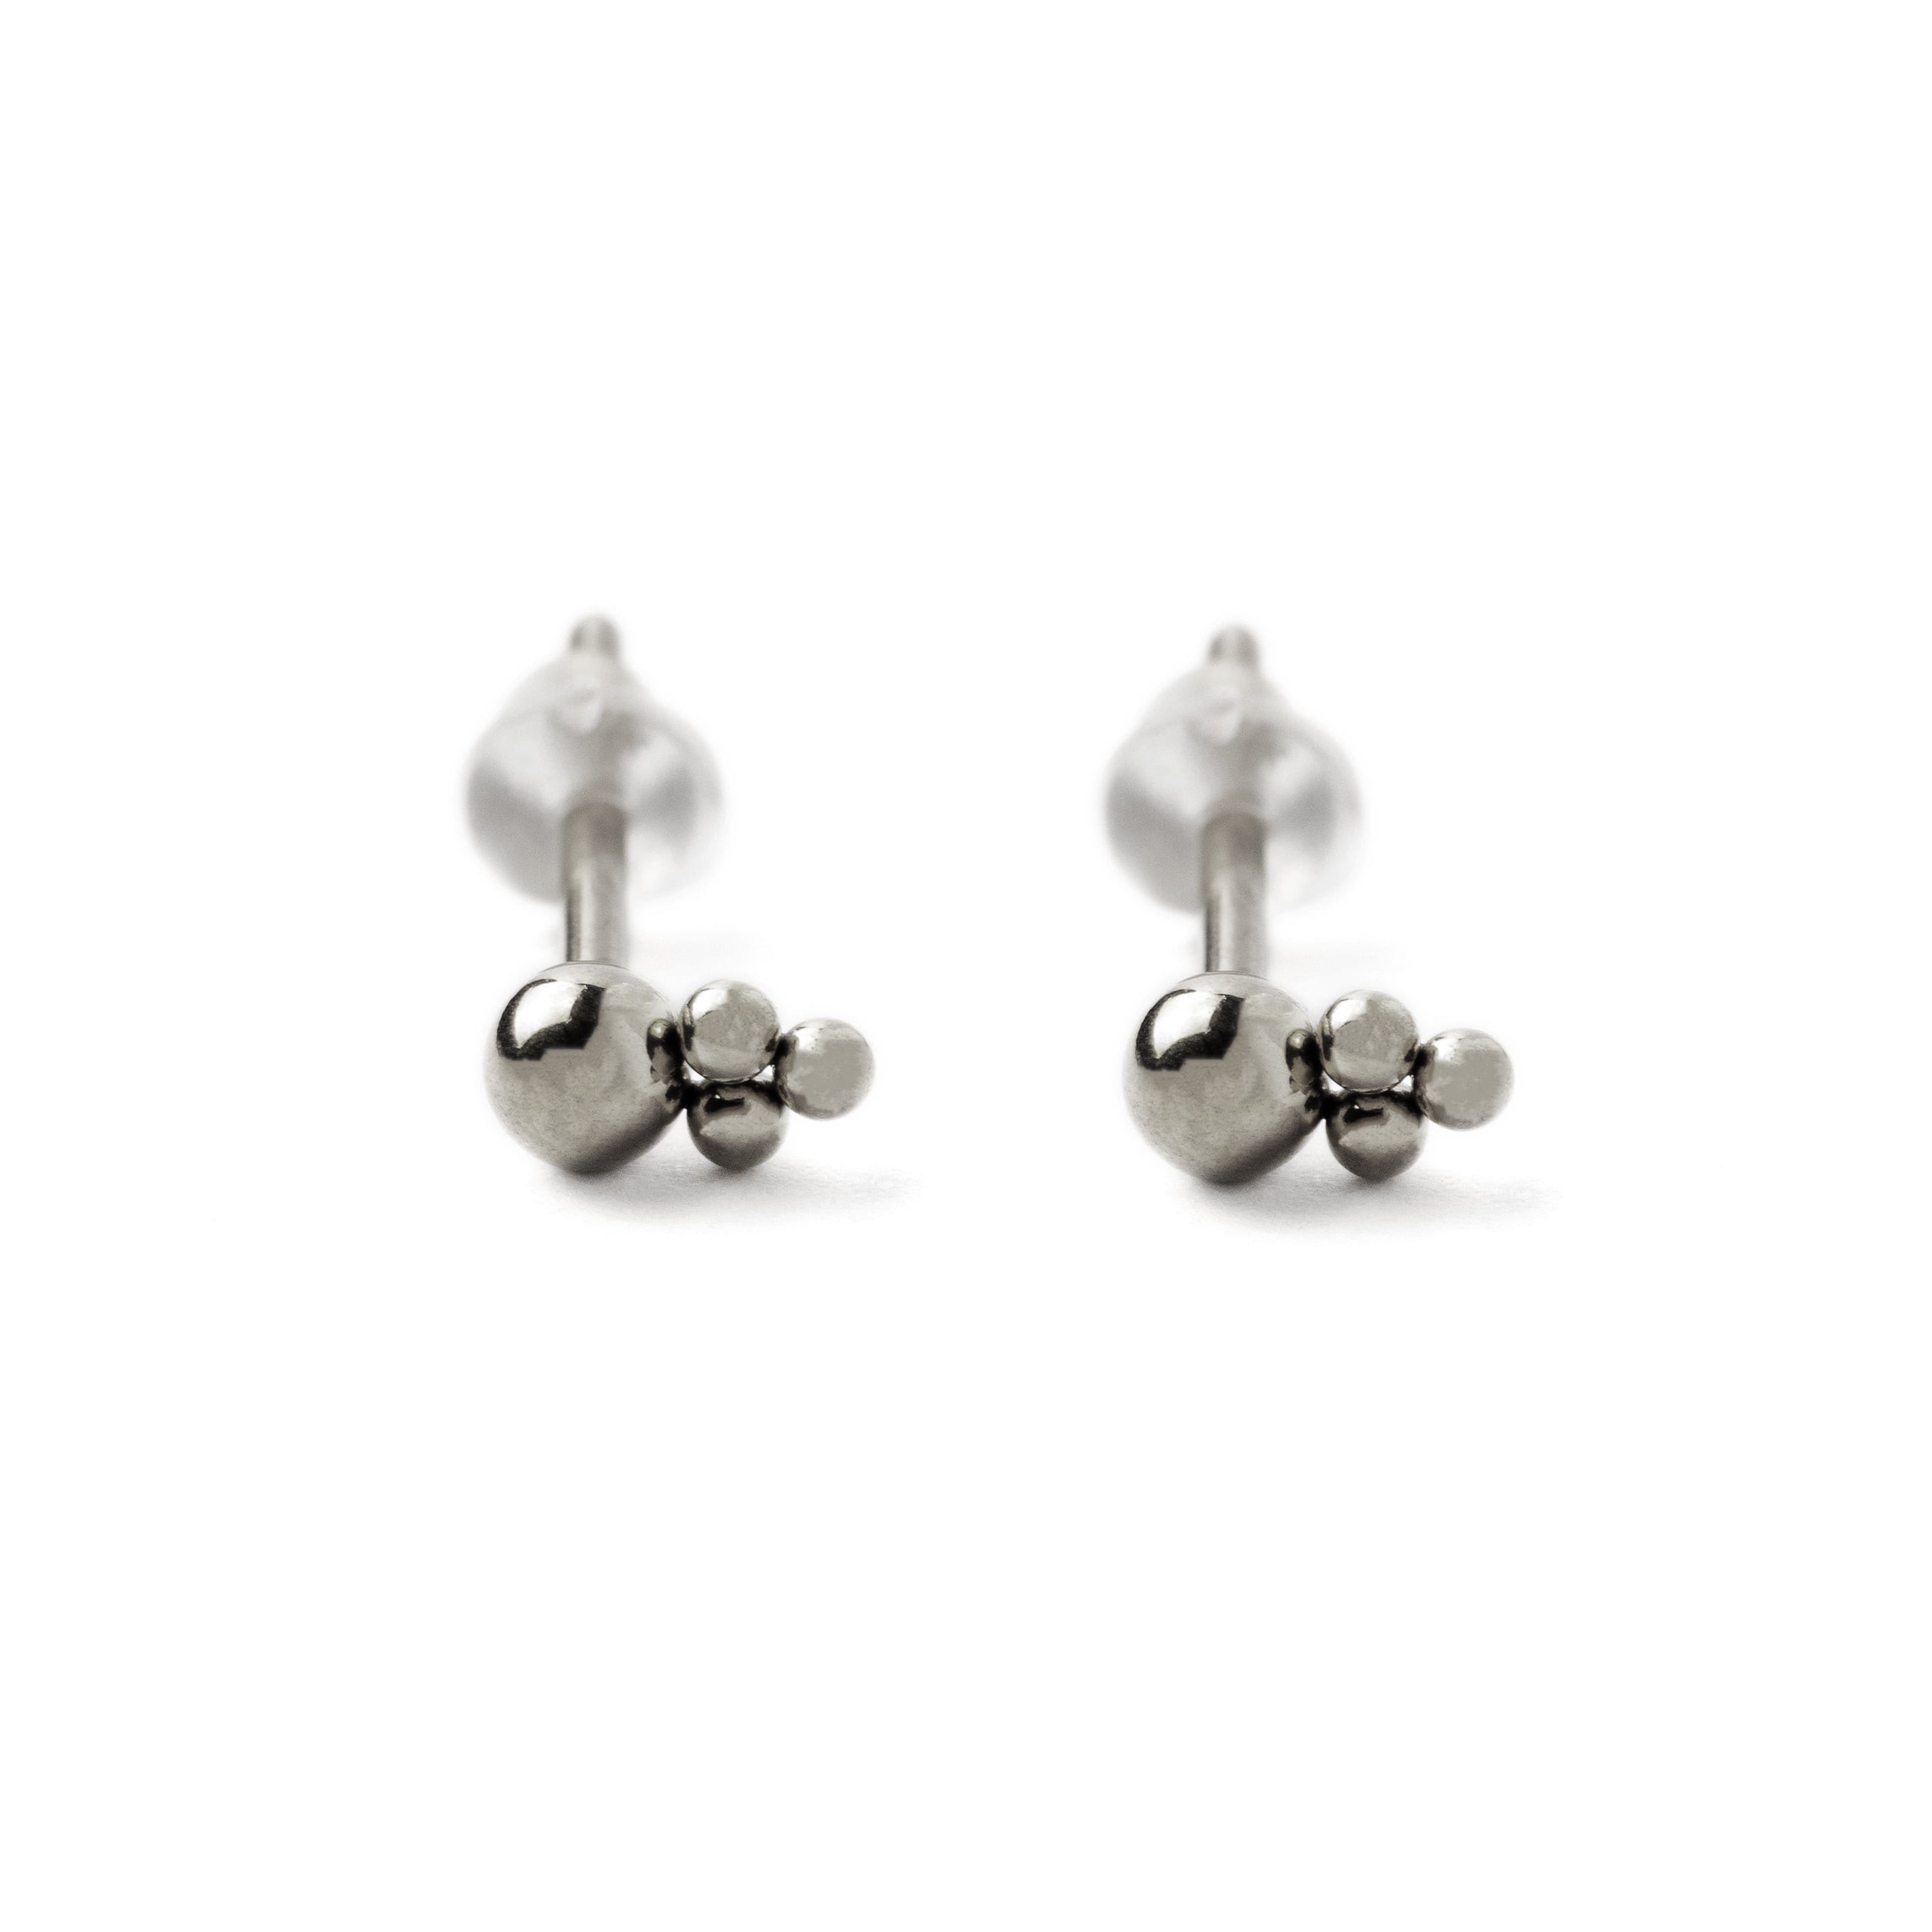 Gold Flat Back Earrings in Sterling Silver, Cartilage Earring, Tragus  Earring, Nose Earring, Flat Back Stud Earrings, Piercing Jewelry 